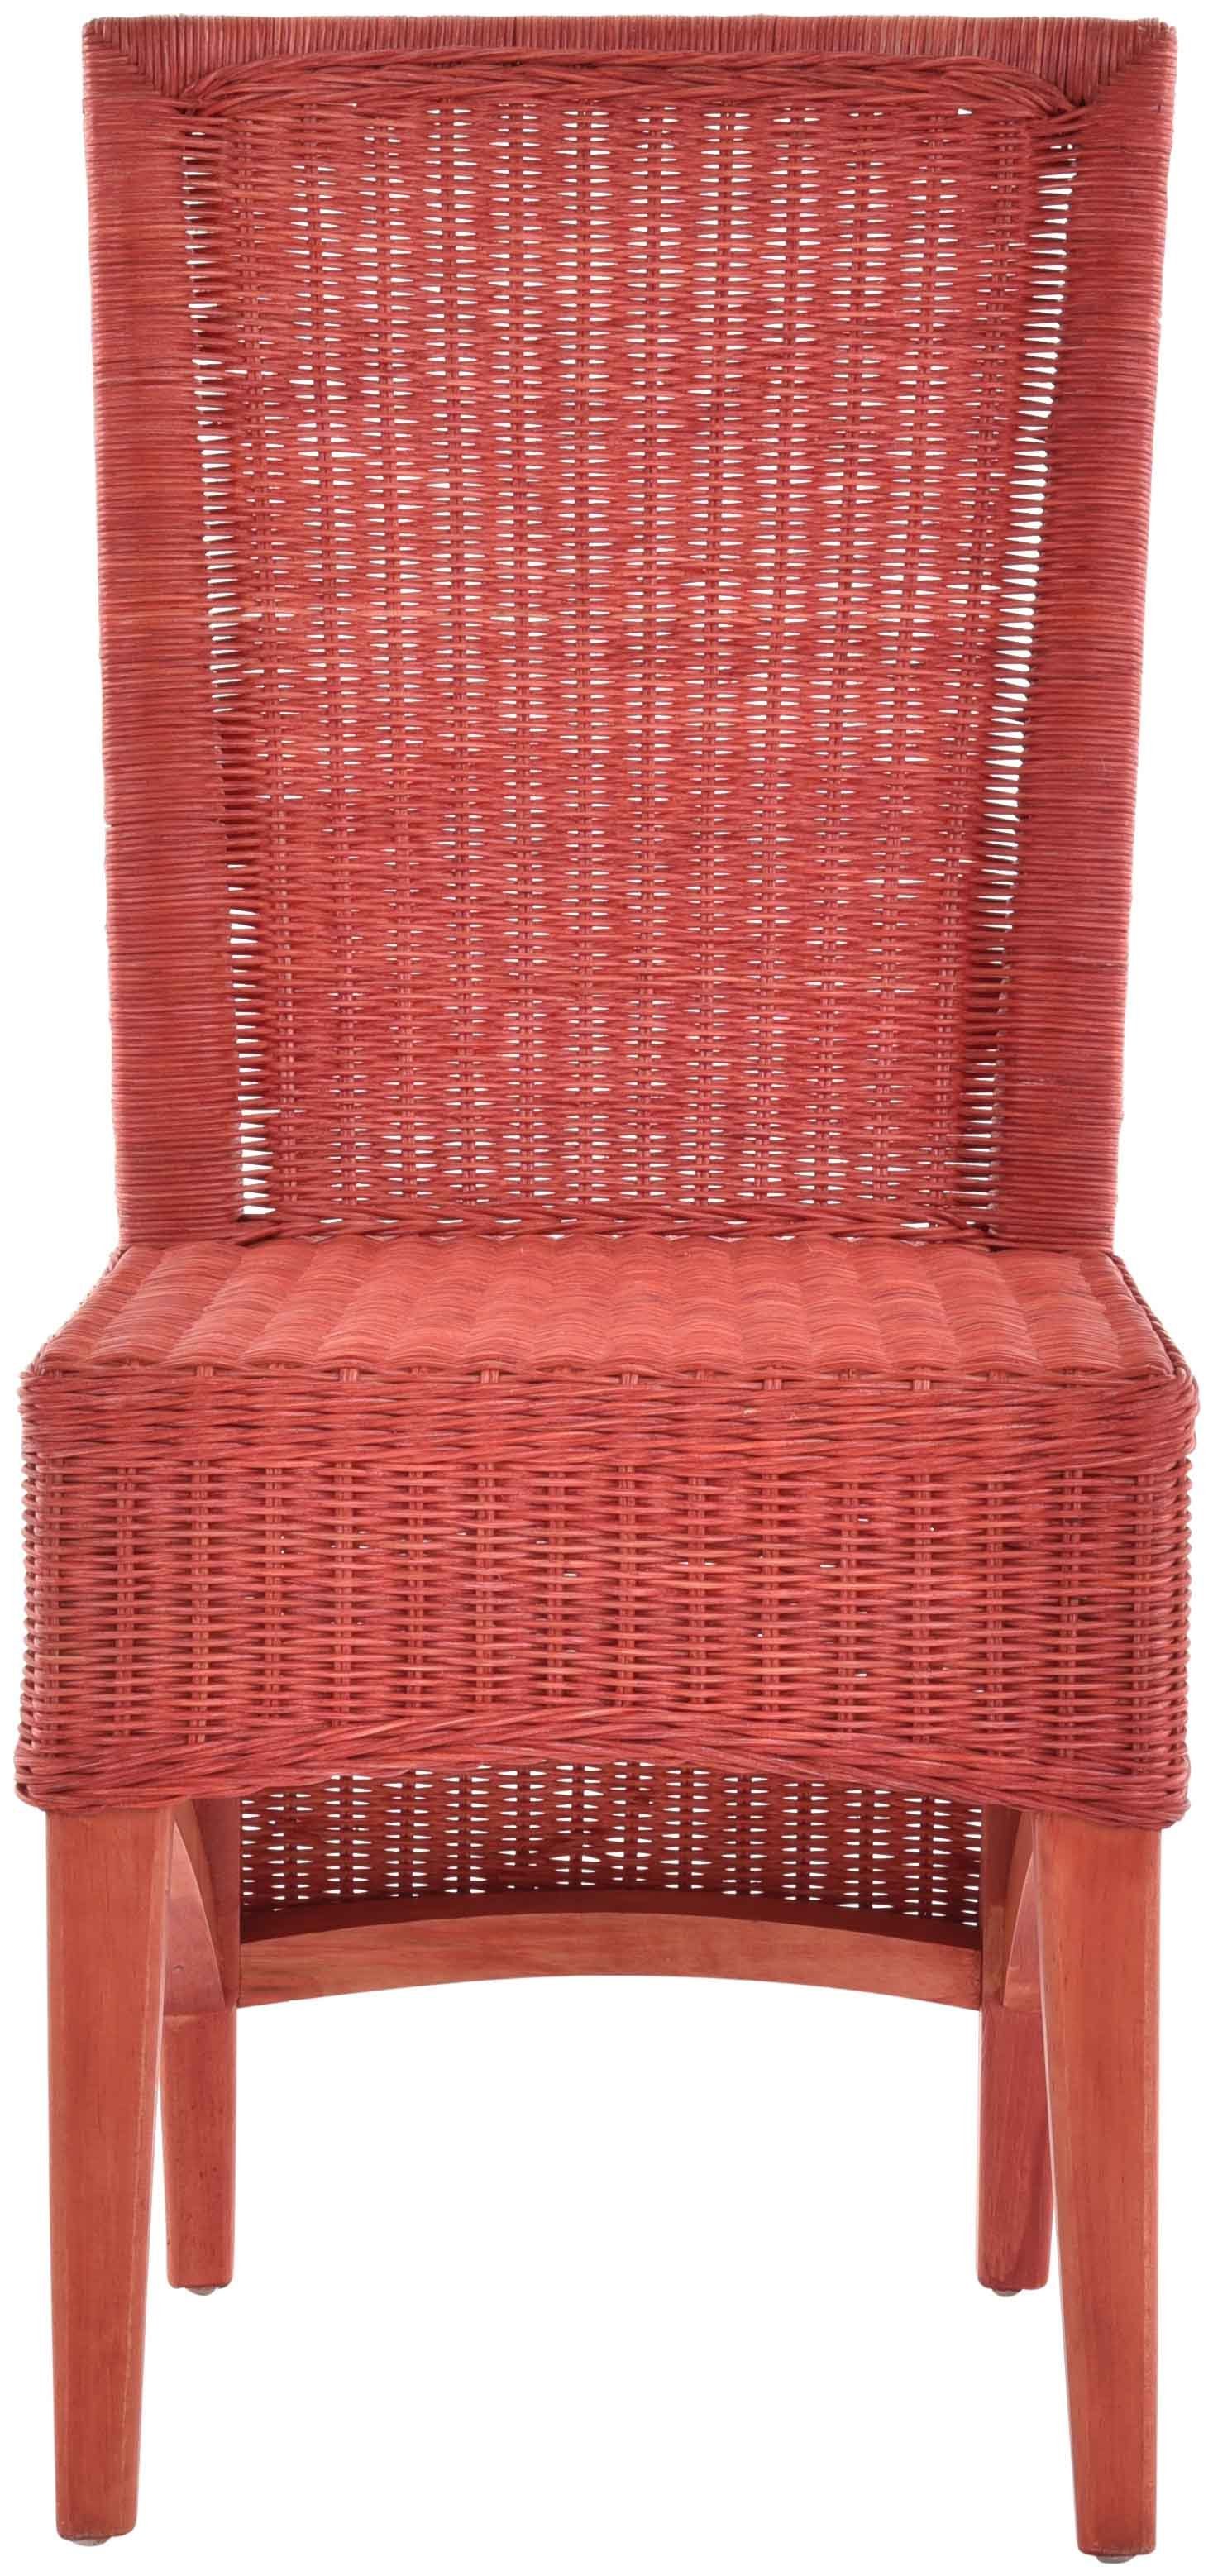 Krines Home Esszimmerstuhl hoher Rattanstuhl aus Rattan Rot Holzgestell, Rückenlehne Esszimmer Mit Küchenstuhl Stuhl